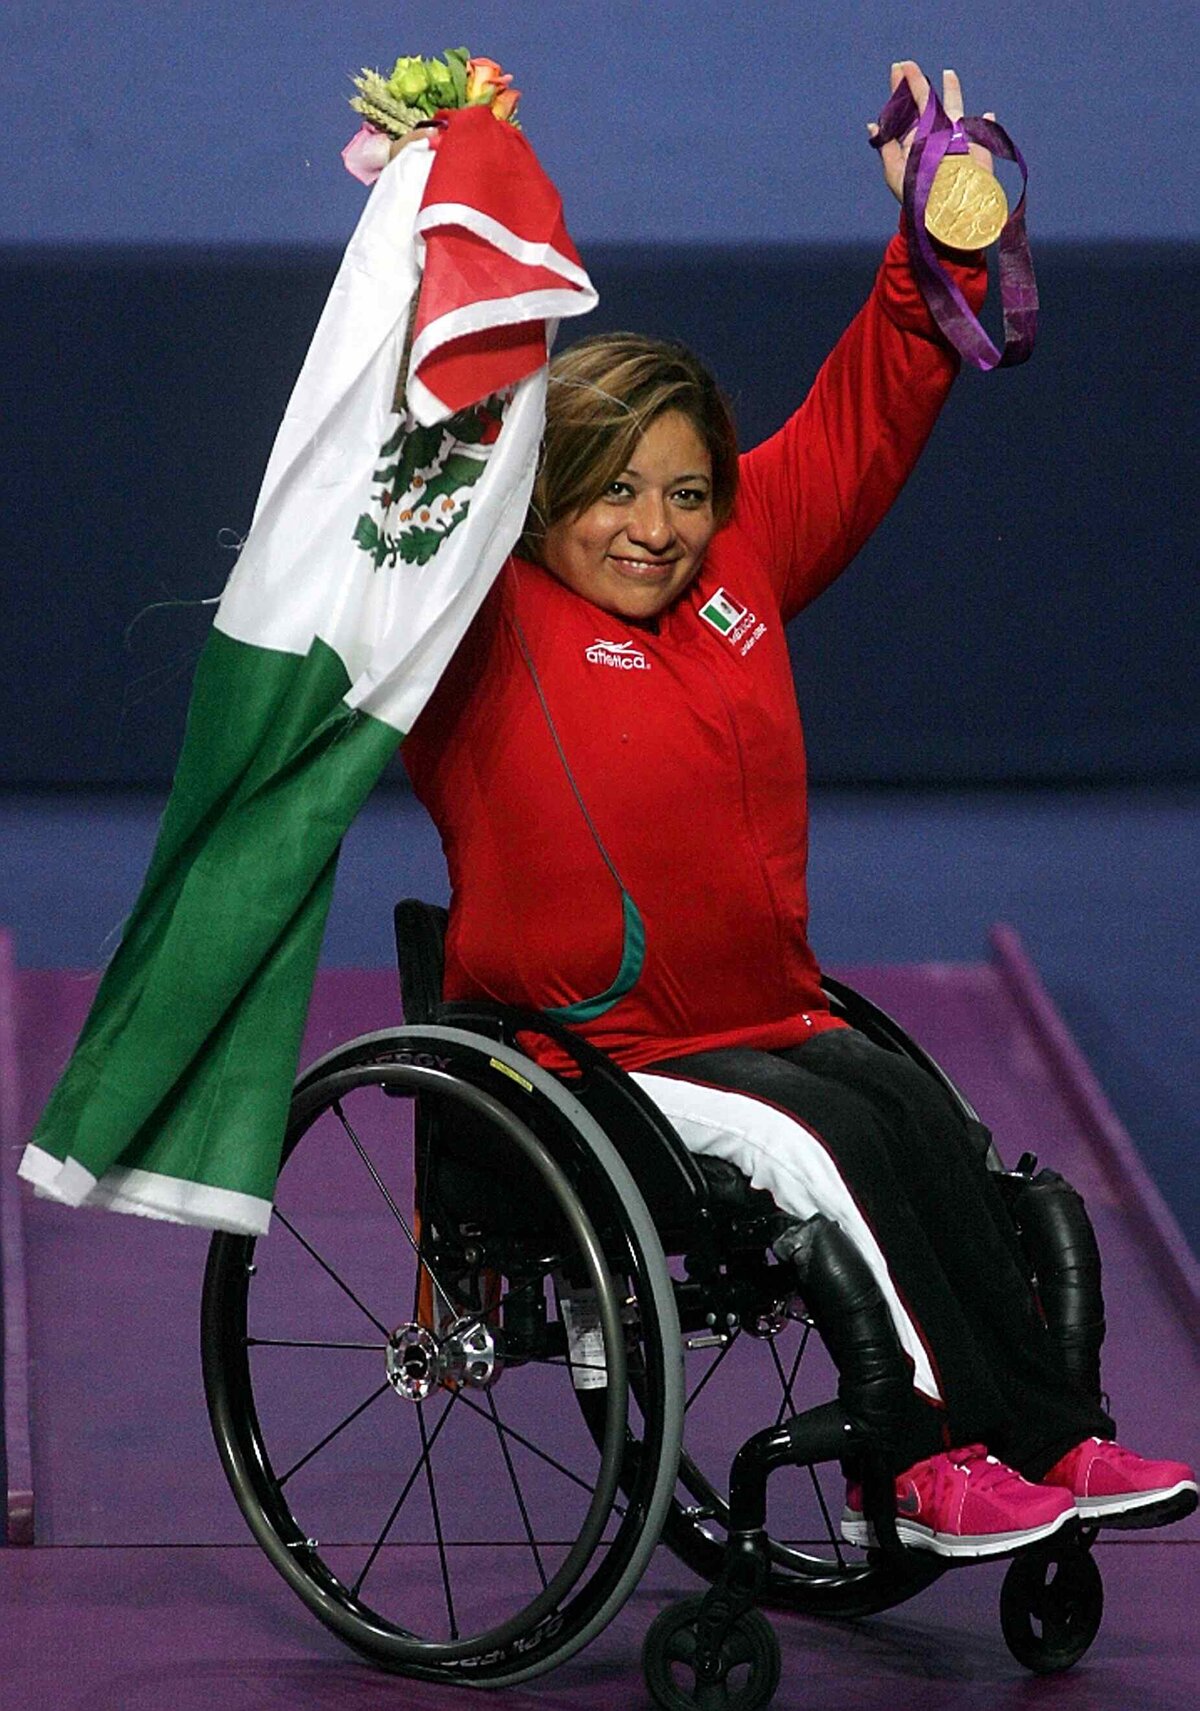 Diego López y Amalia Pérez: Conoce a los abanderados de México en los Juegos Paralímpicos de Tokio 2020